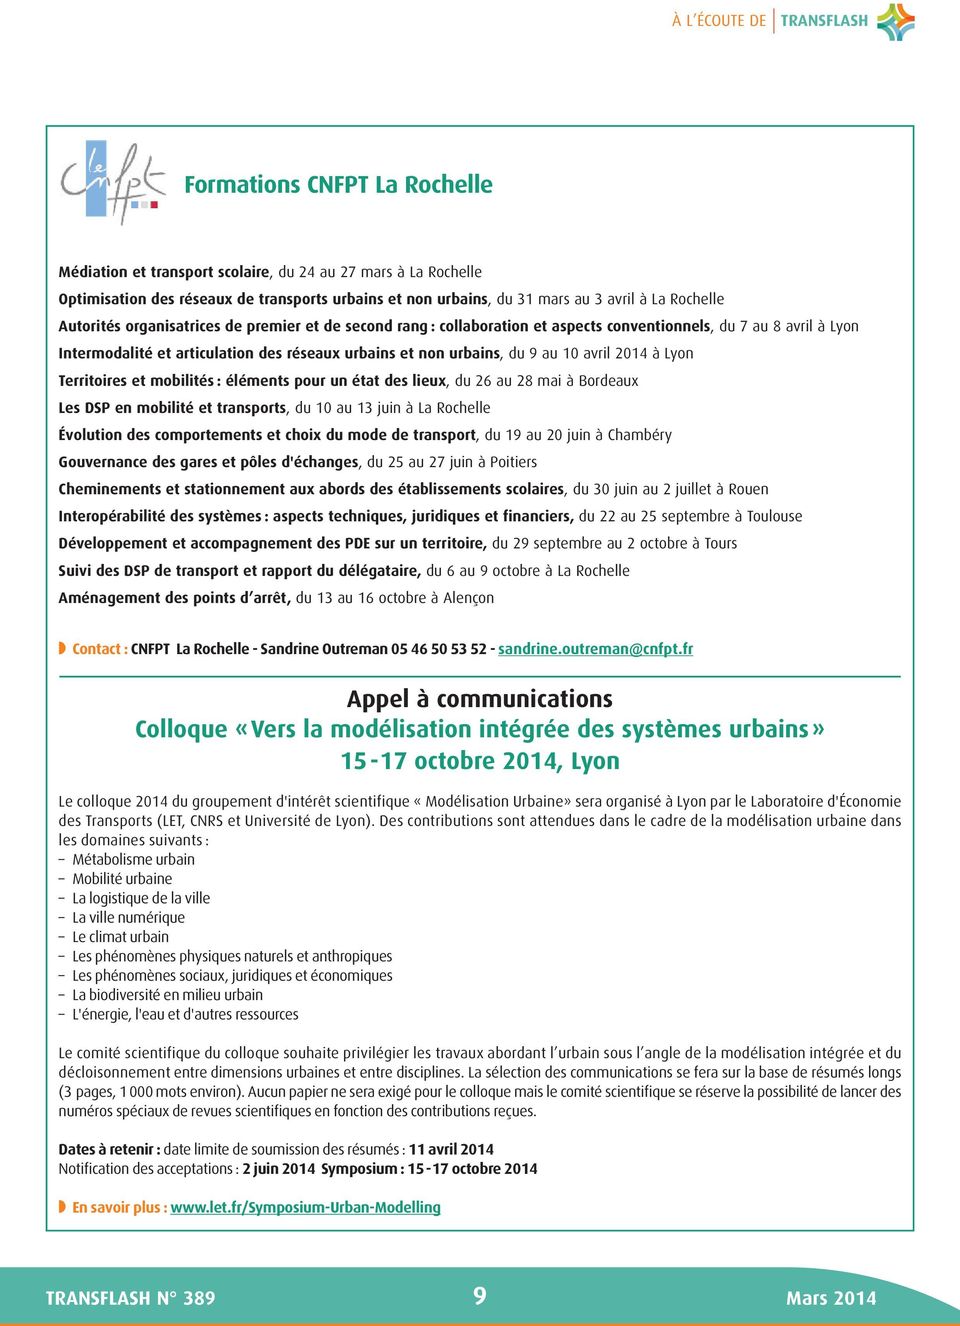 urbains, du 9 au 10 avril 2014 à Lyon Territoires et mobilités : éléments pour un état des lieux, du 26 au 28 mai à Bordeaux Les DSP en mobilité et transports, du 10 au 13 juin à La Rochelle